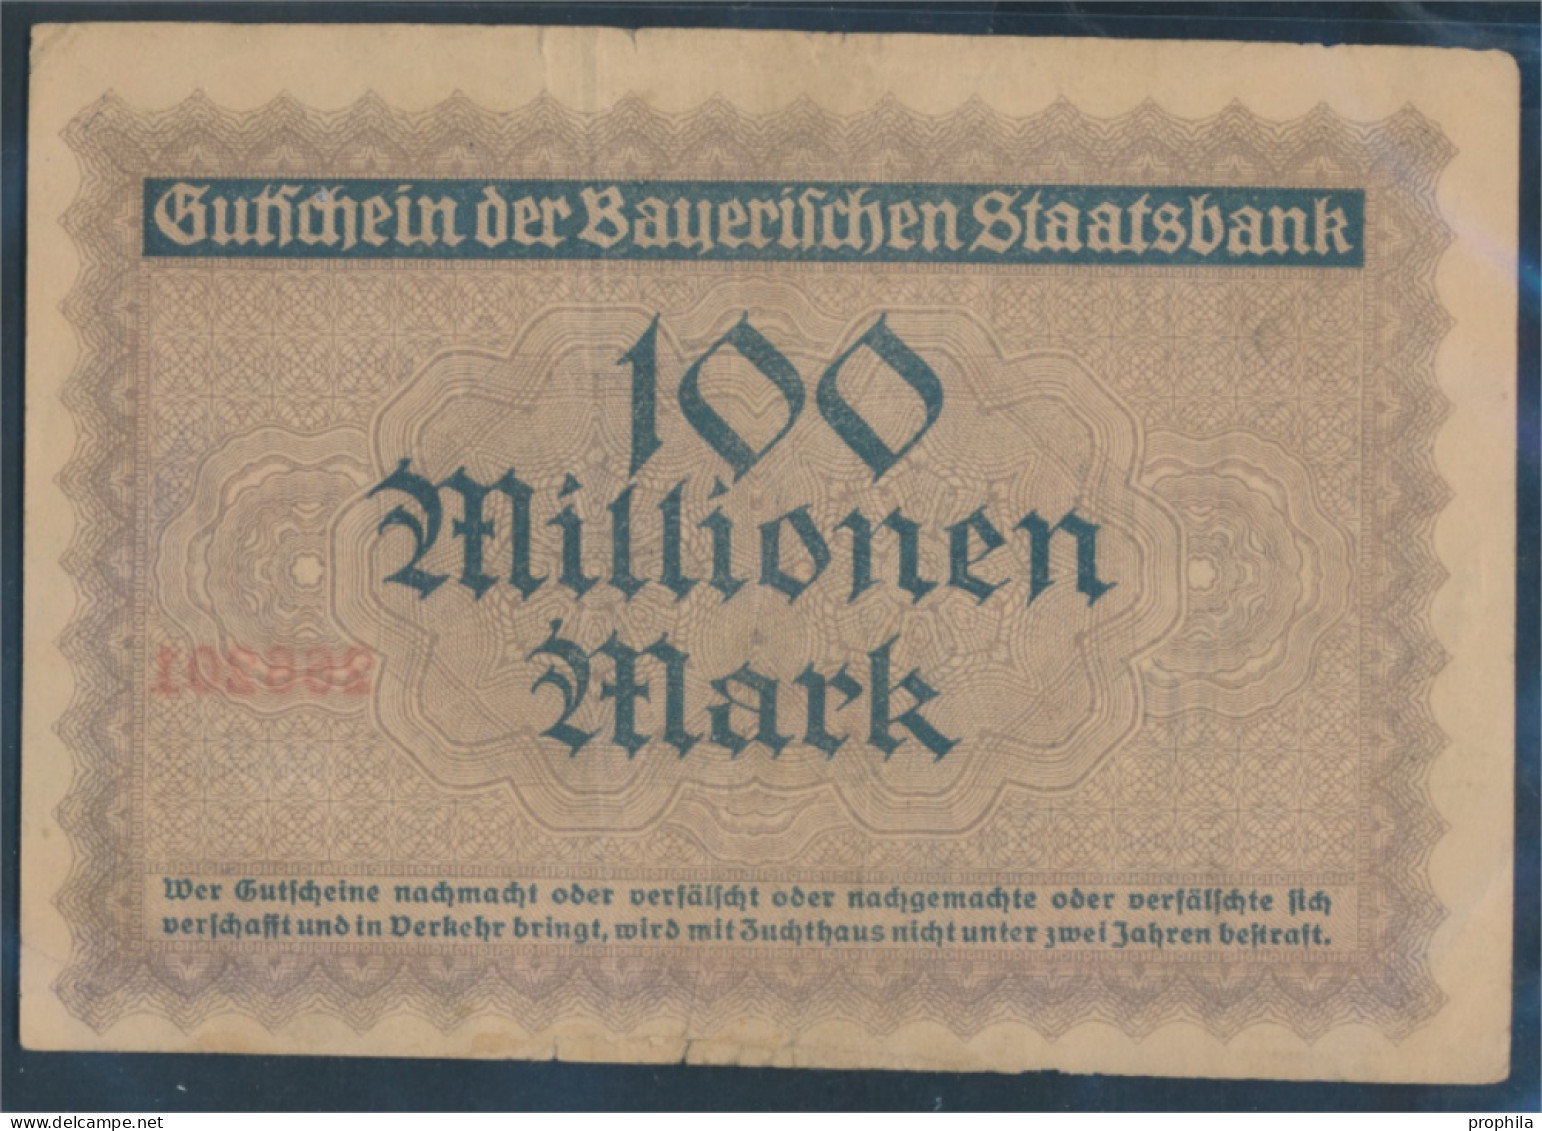 Bayern Inflationsgeld Bayerische Staatsbank Gebraucht (III) 1923 100 Millionen Mark (10288401 - 100 Mio. Mark